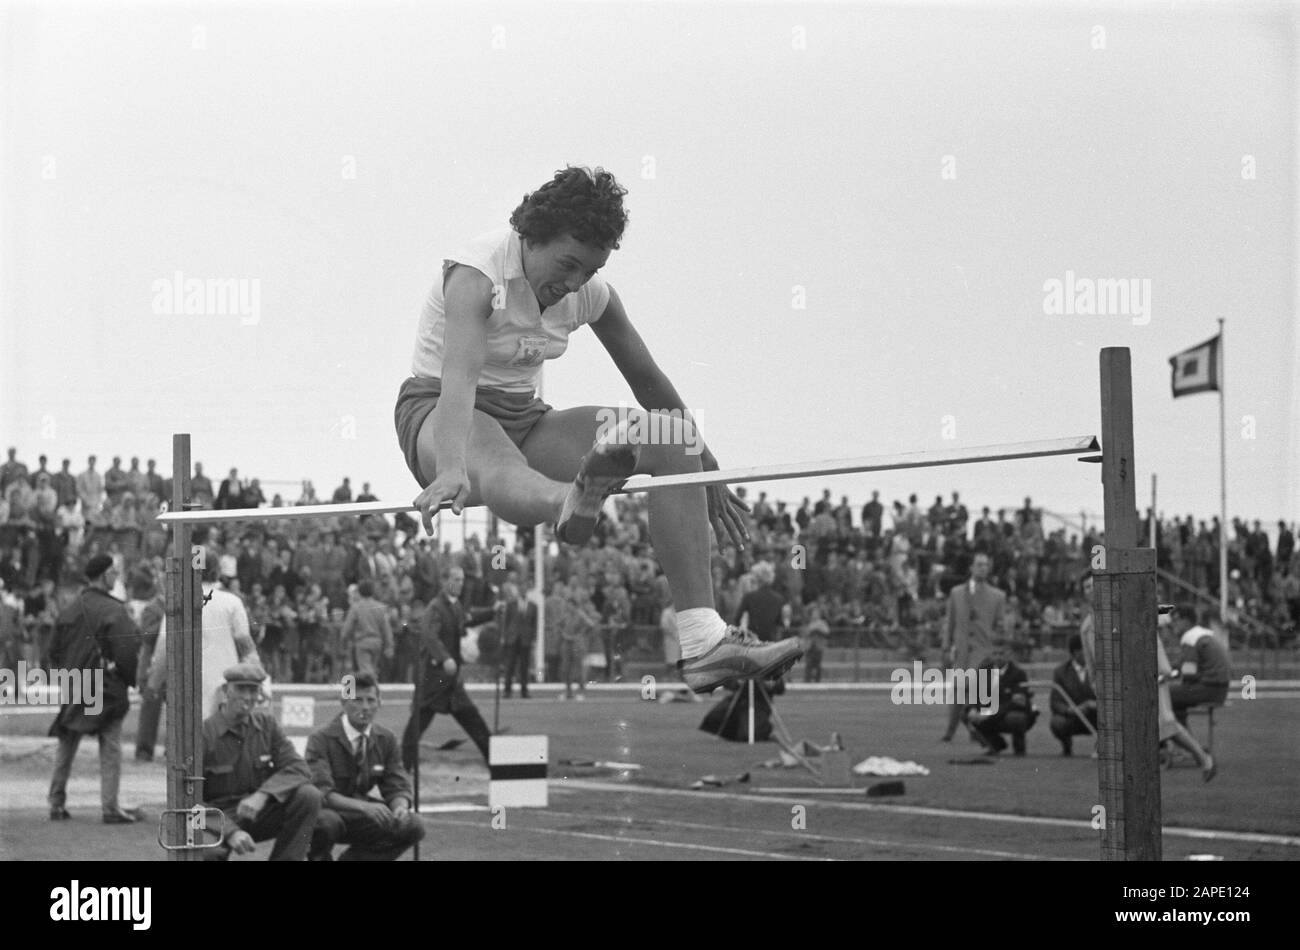 Atletica Olanda Contro Germania Est. High jump Nel Zwier Data: 13 agosto 1961 Località: D.D.R., Germania, Olanda Parole Chiave: High-JUP, atletica leggera Foto Stock